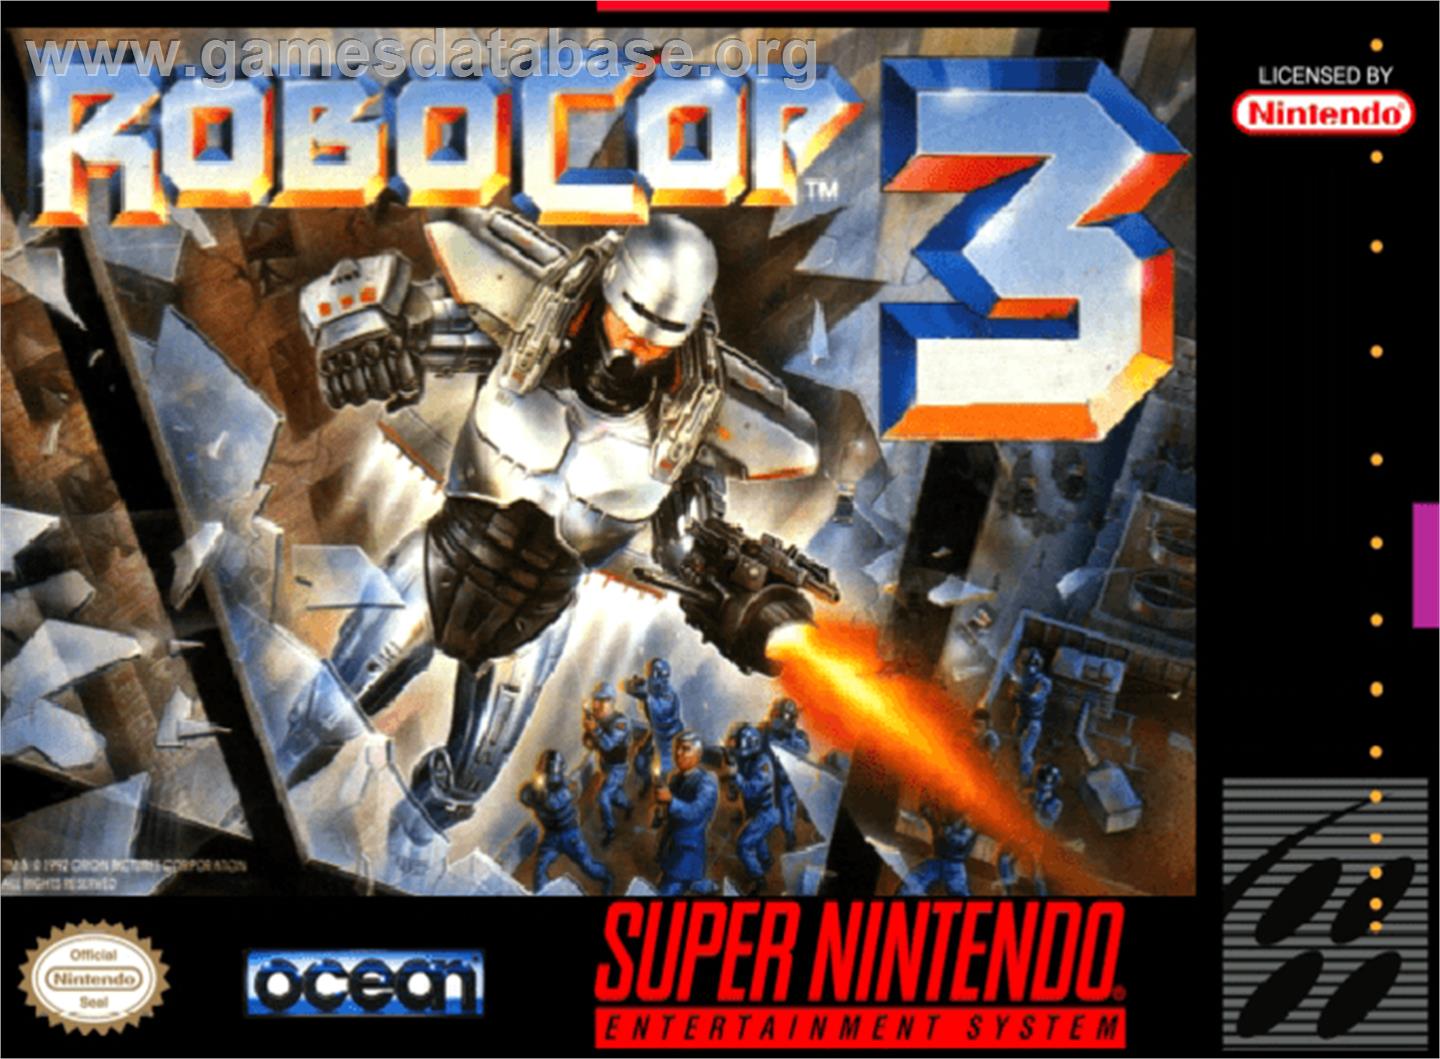 RoboCop 3 - Nintendo SNES - Artwork - Box